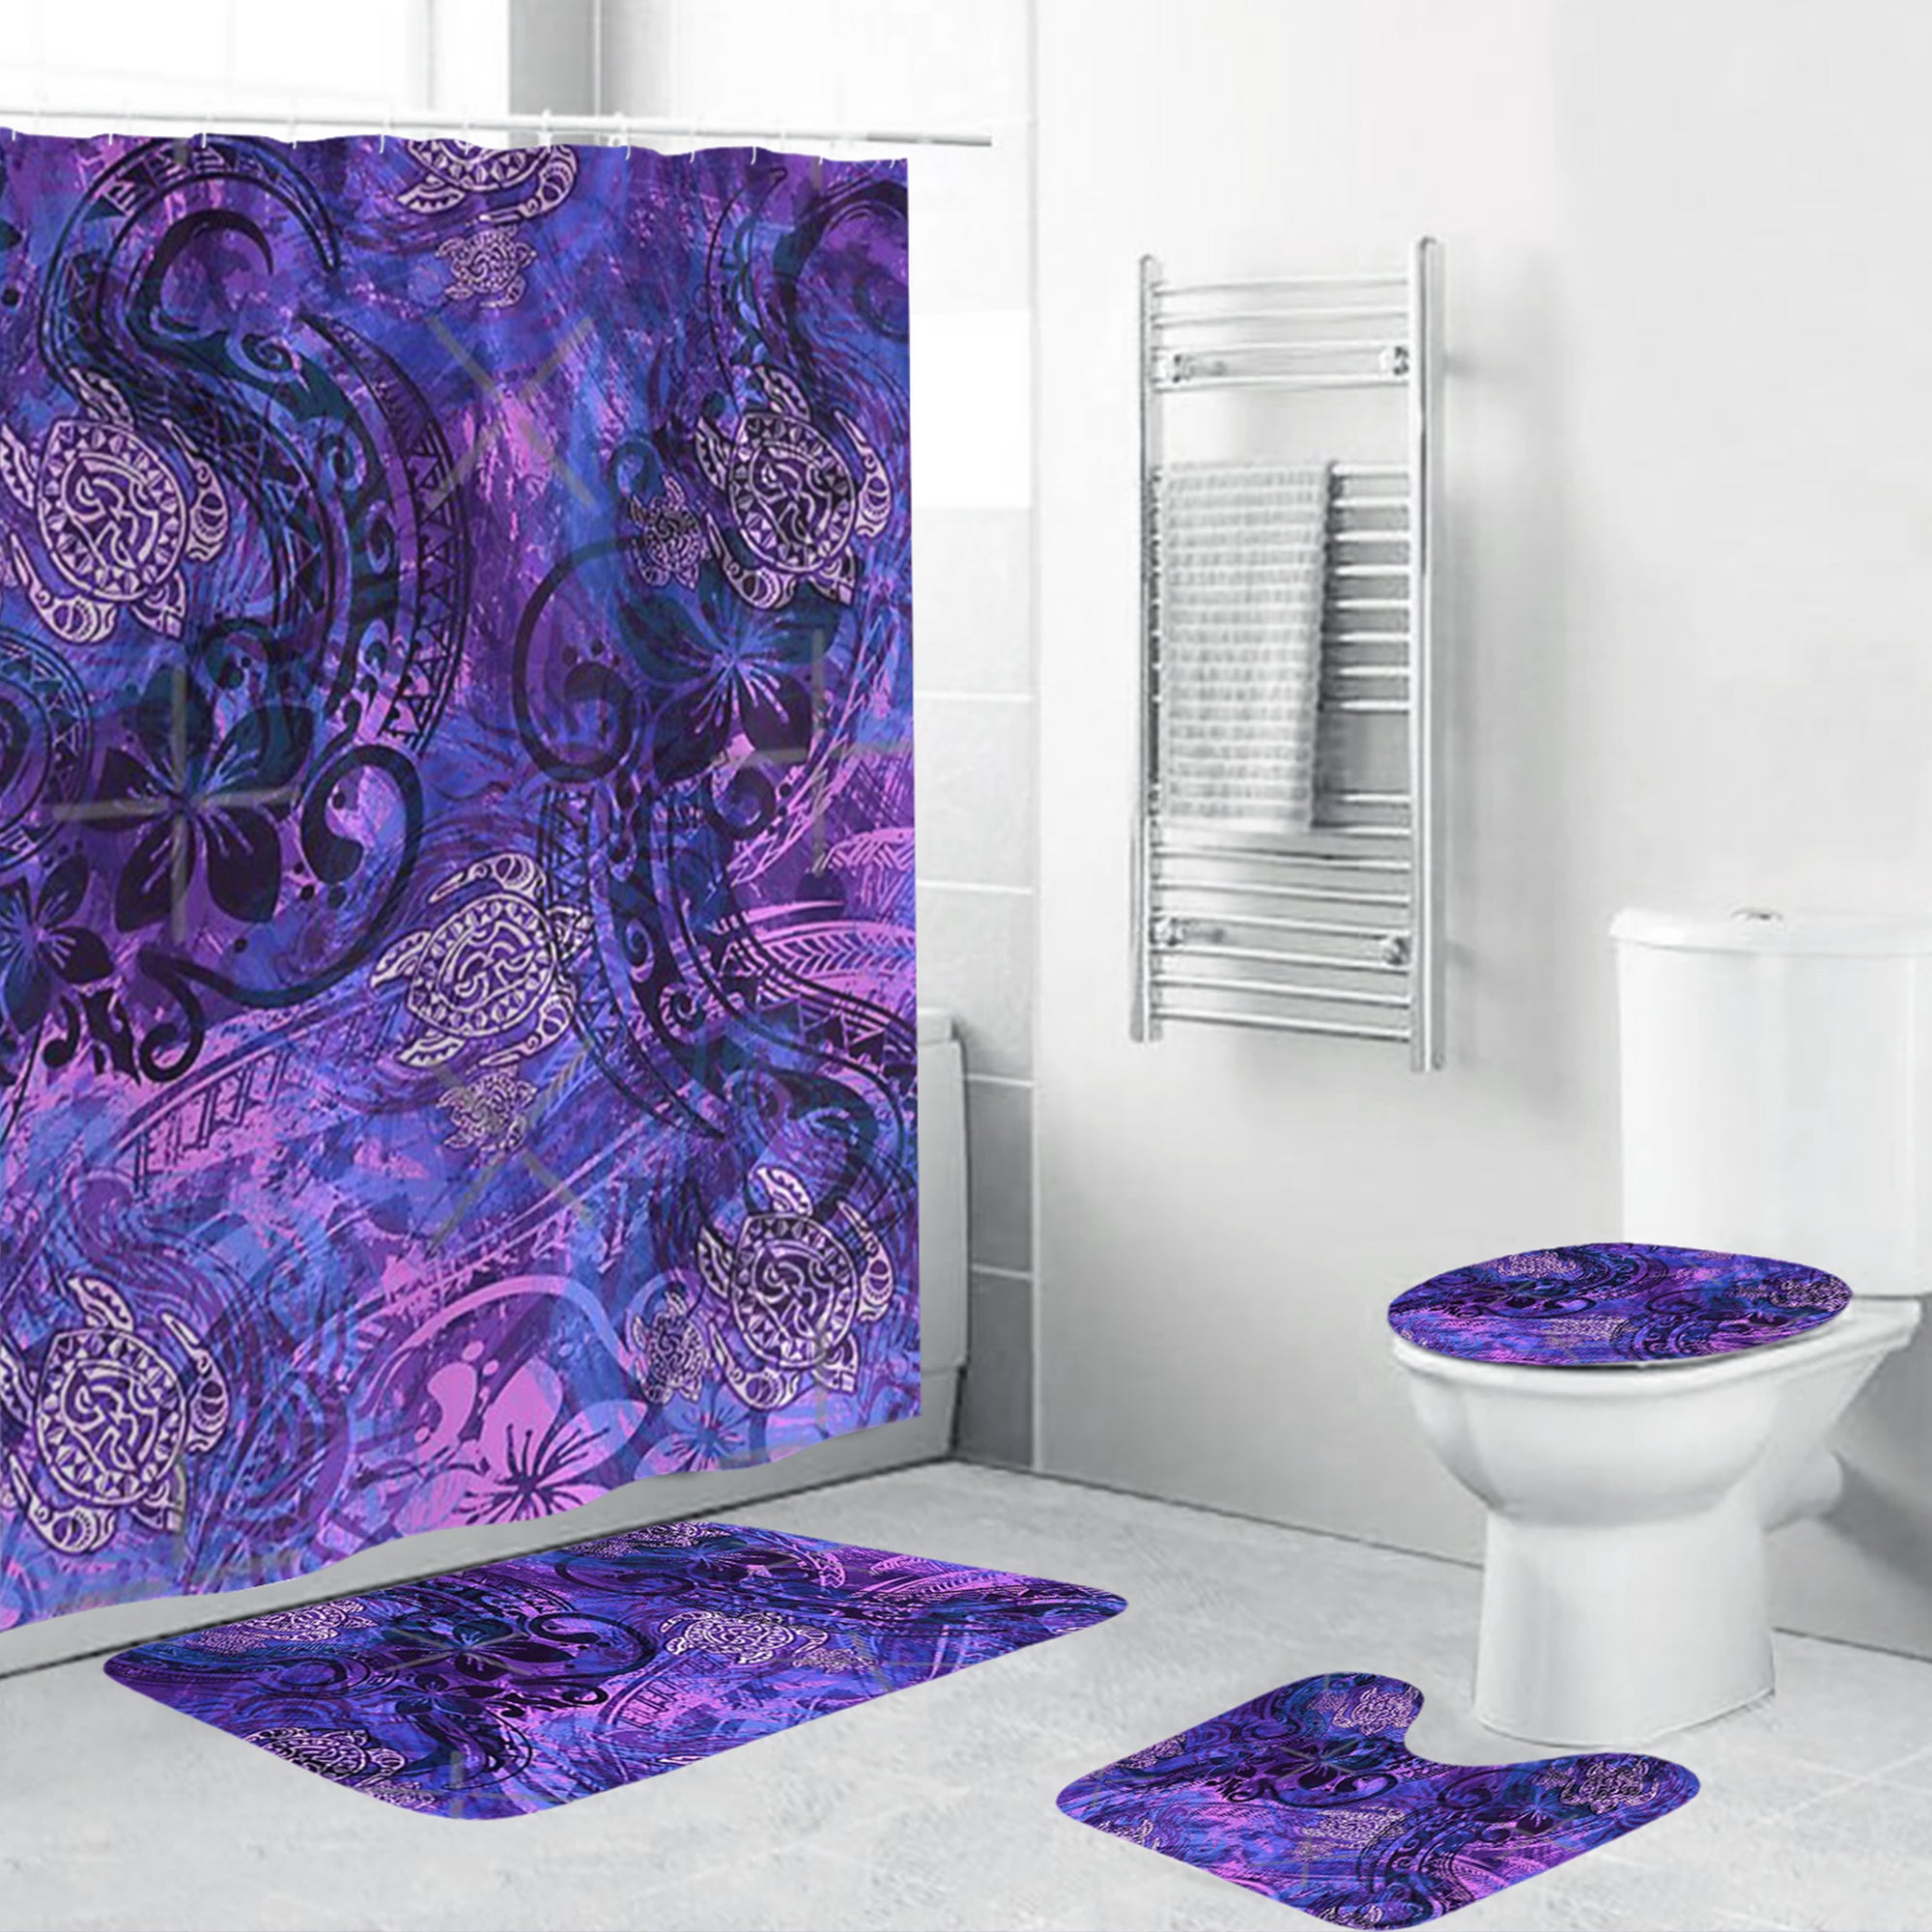 Polynesian Home Set - Polynesian Painted Purples Tribal Bathroom Set LT10 Purple - Polynesian Pride